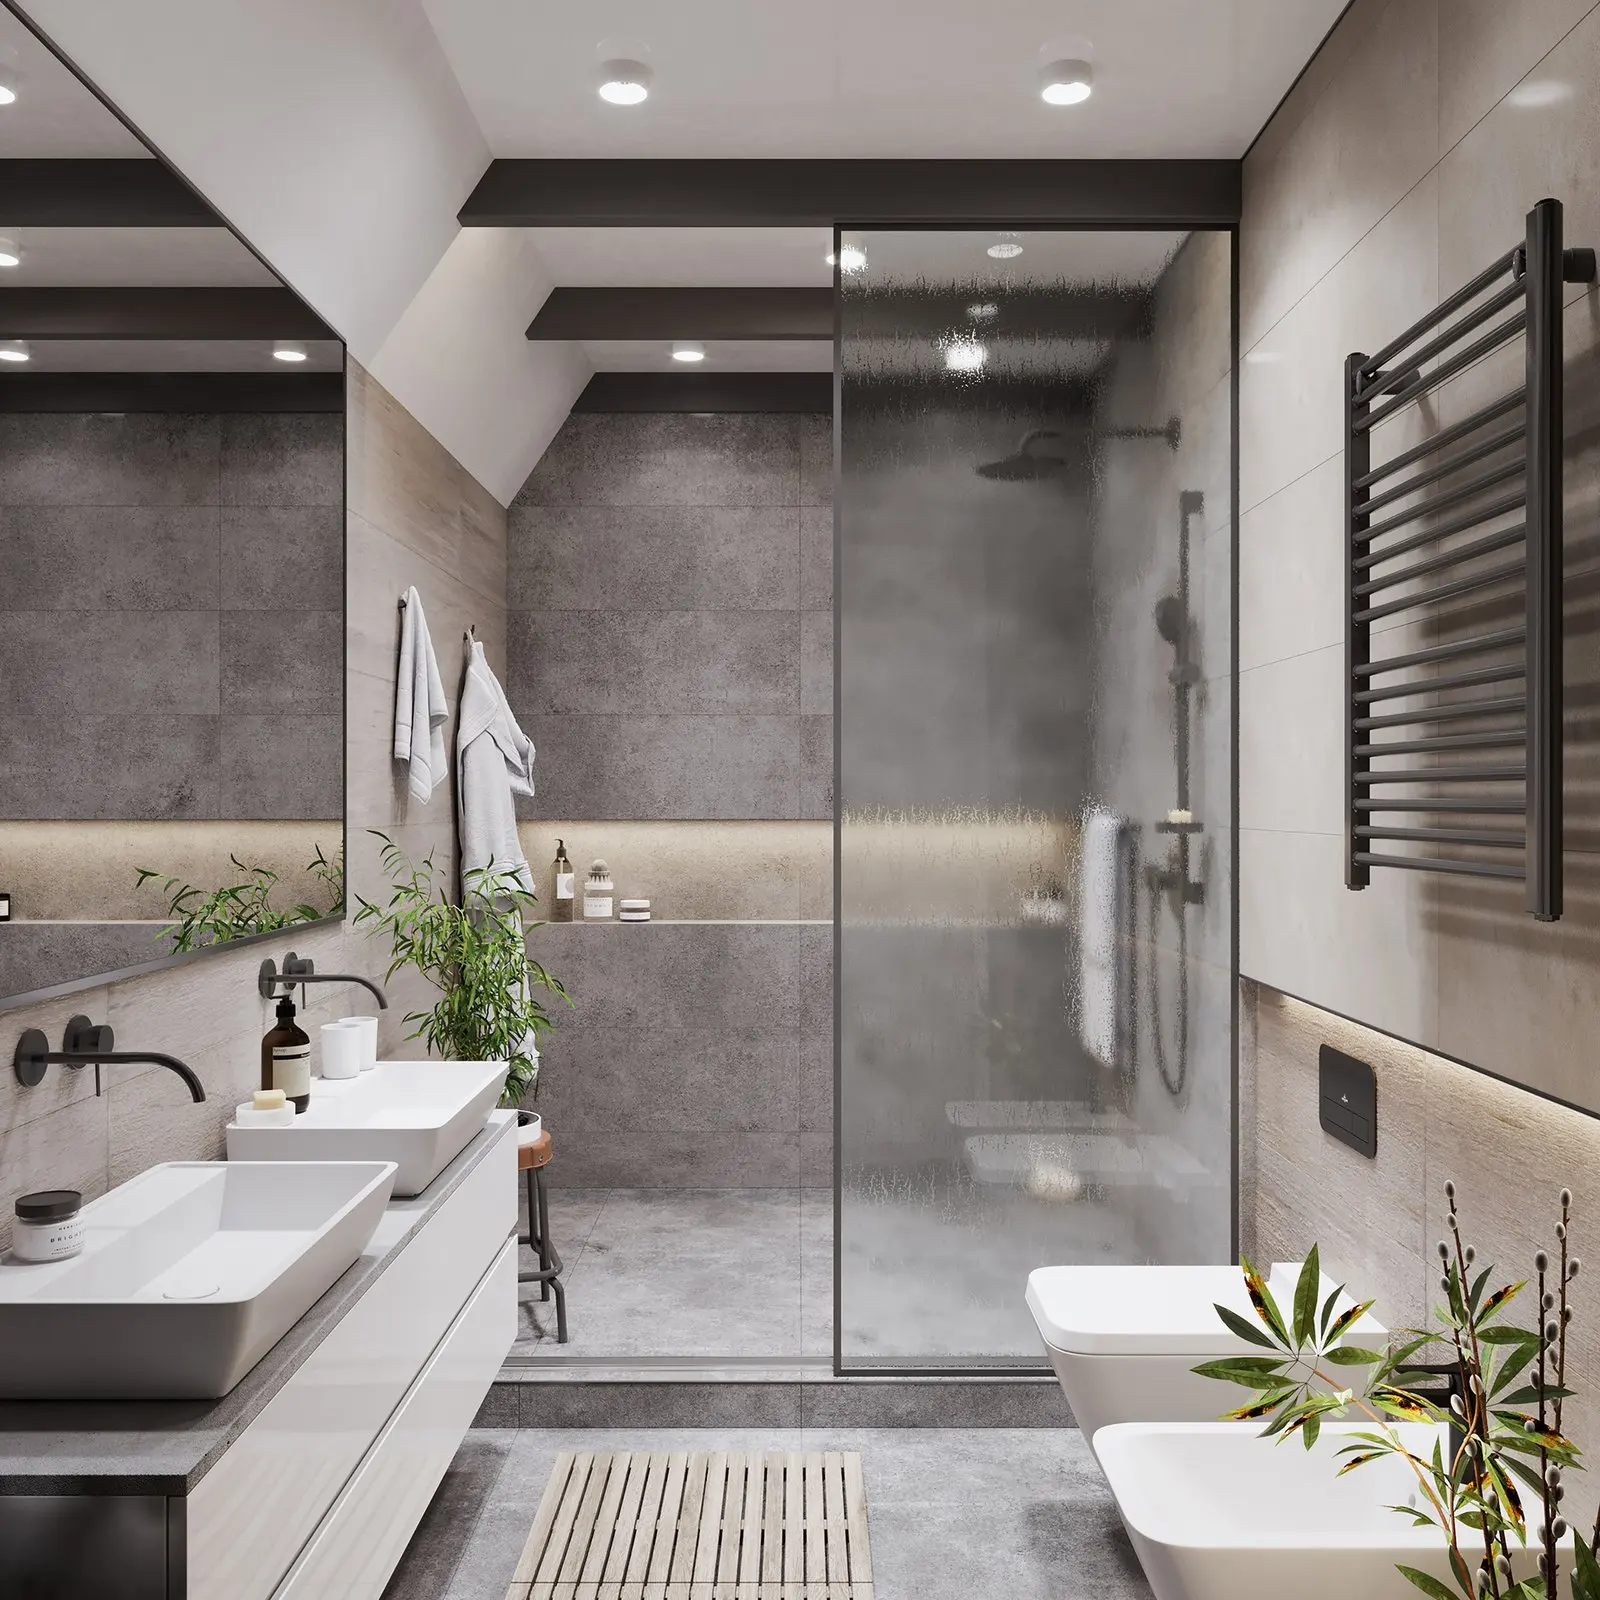 Wooden Double Sinks 72 Inch Ethan Allen Flair Bathroom Vanities Without Legs Buy 30 Inch Bathroom Vanity